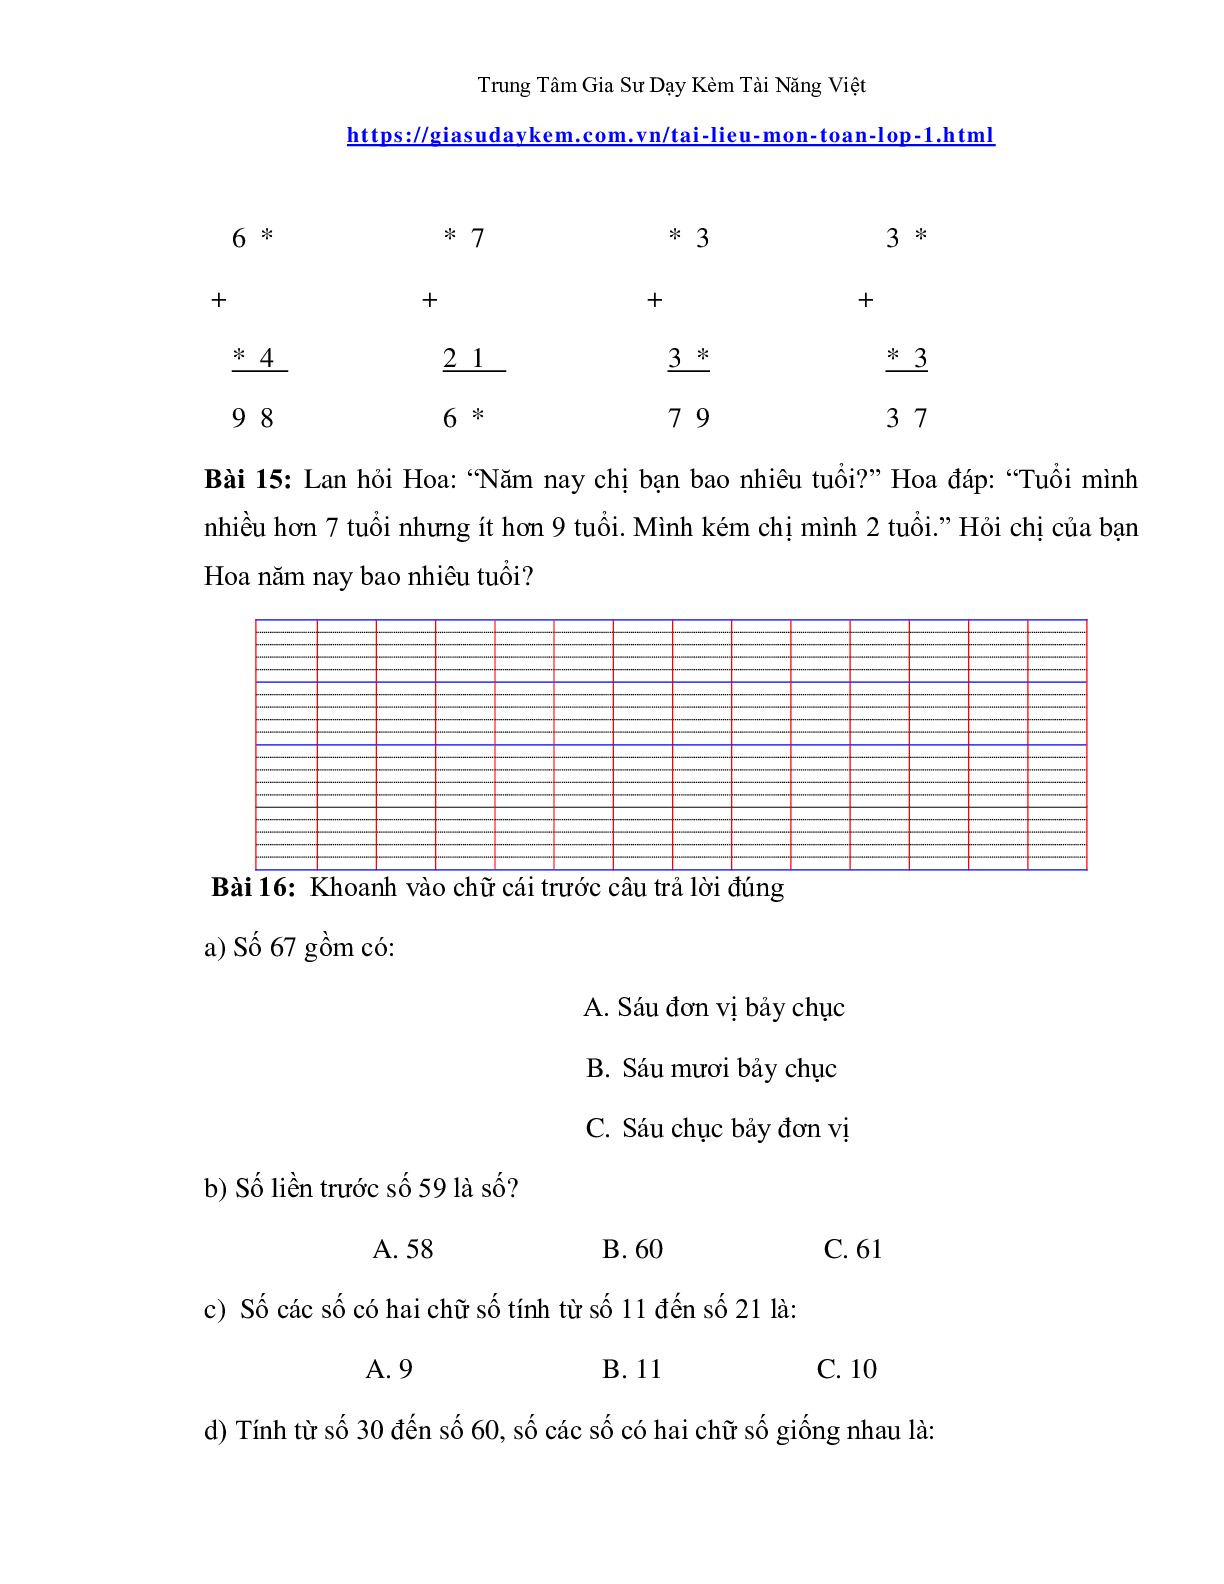 Đề thi toán lớp một nâng cao (trang 5)